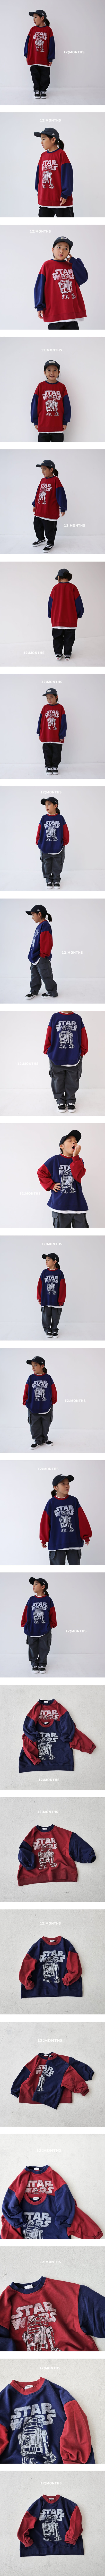 12 Month - Korean Children Fashion - #kidzfashiontrend - Star Wars Sweatshirt